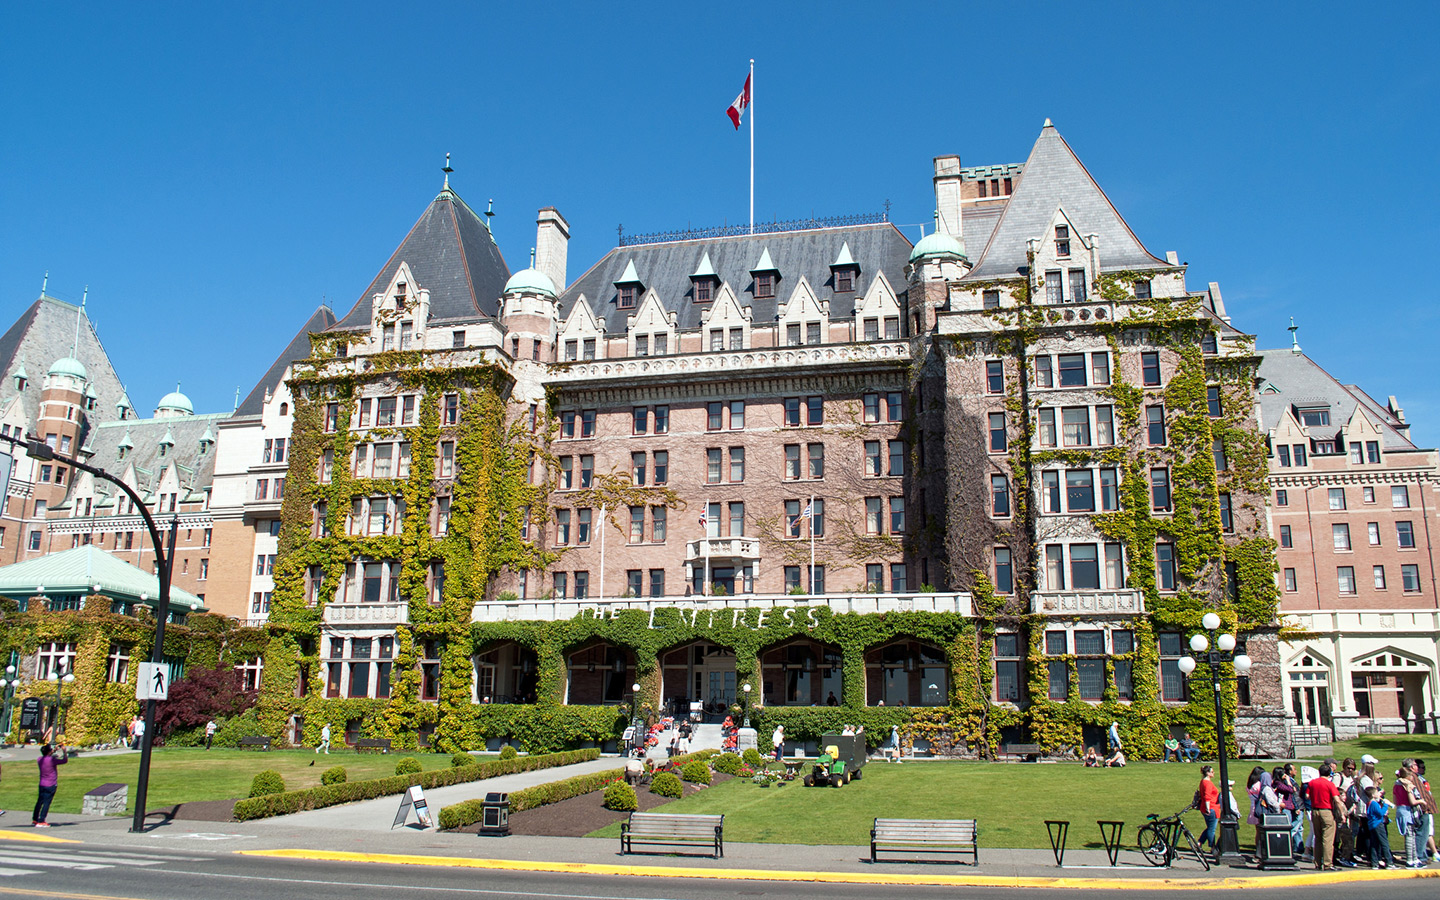 Fairmont Empress hotel in Victoria, British Columbia